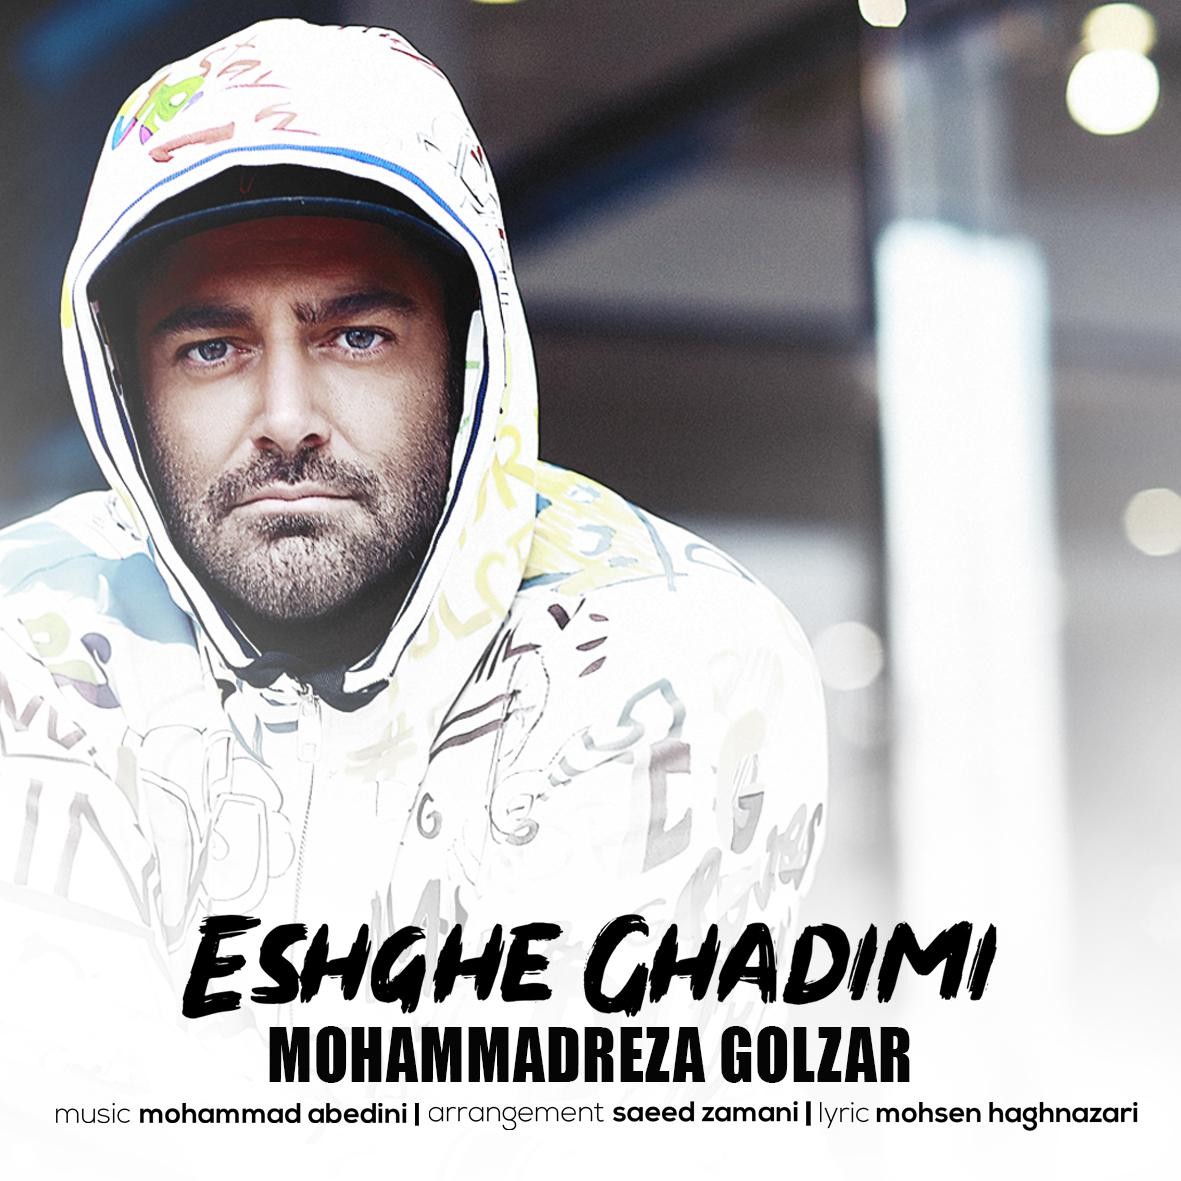  دانلود آهنگ جدید محمدرضا گلزار - عشق قدیمی | Download New Music By Mohammadreza Golzar - Eshghe Ghadimi